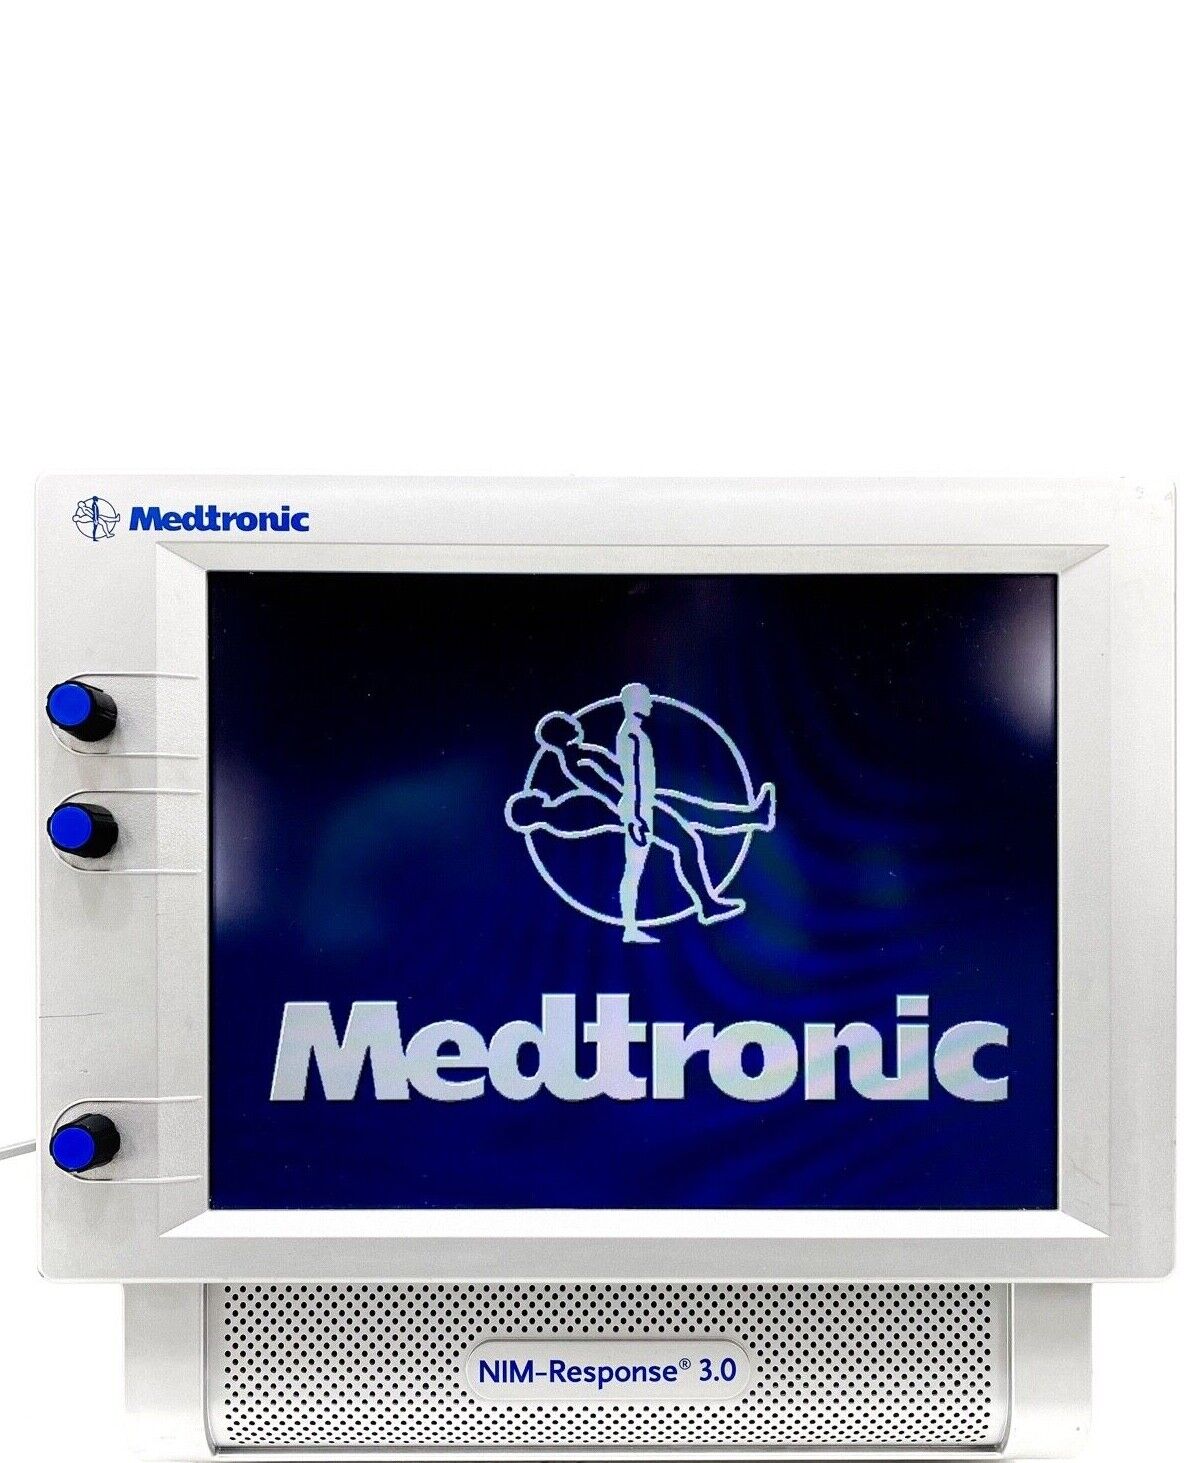 Medtronic NIM-Response 3.0 8253001 Nerve Monitoring System